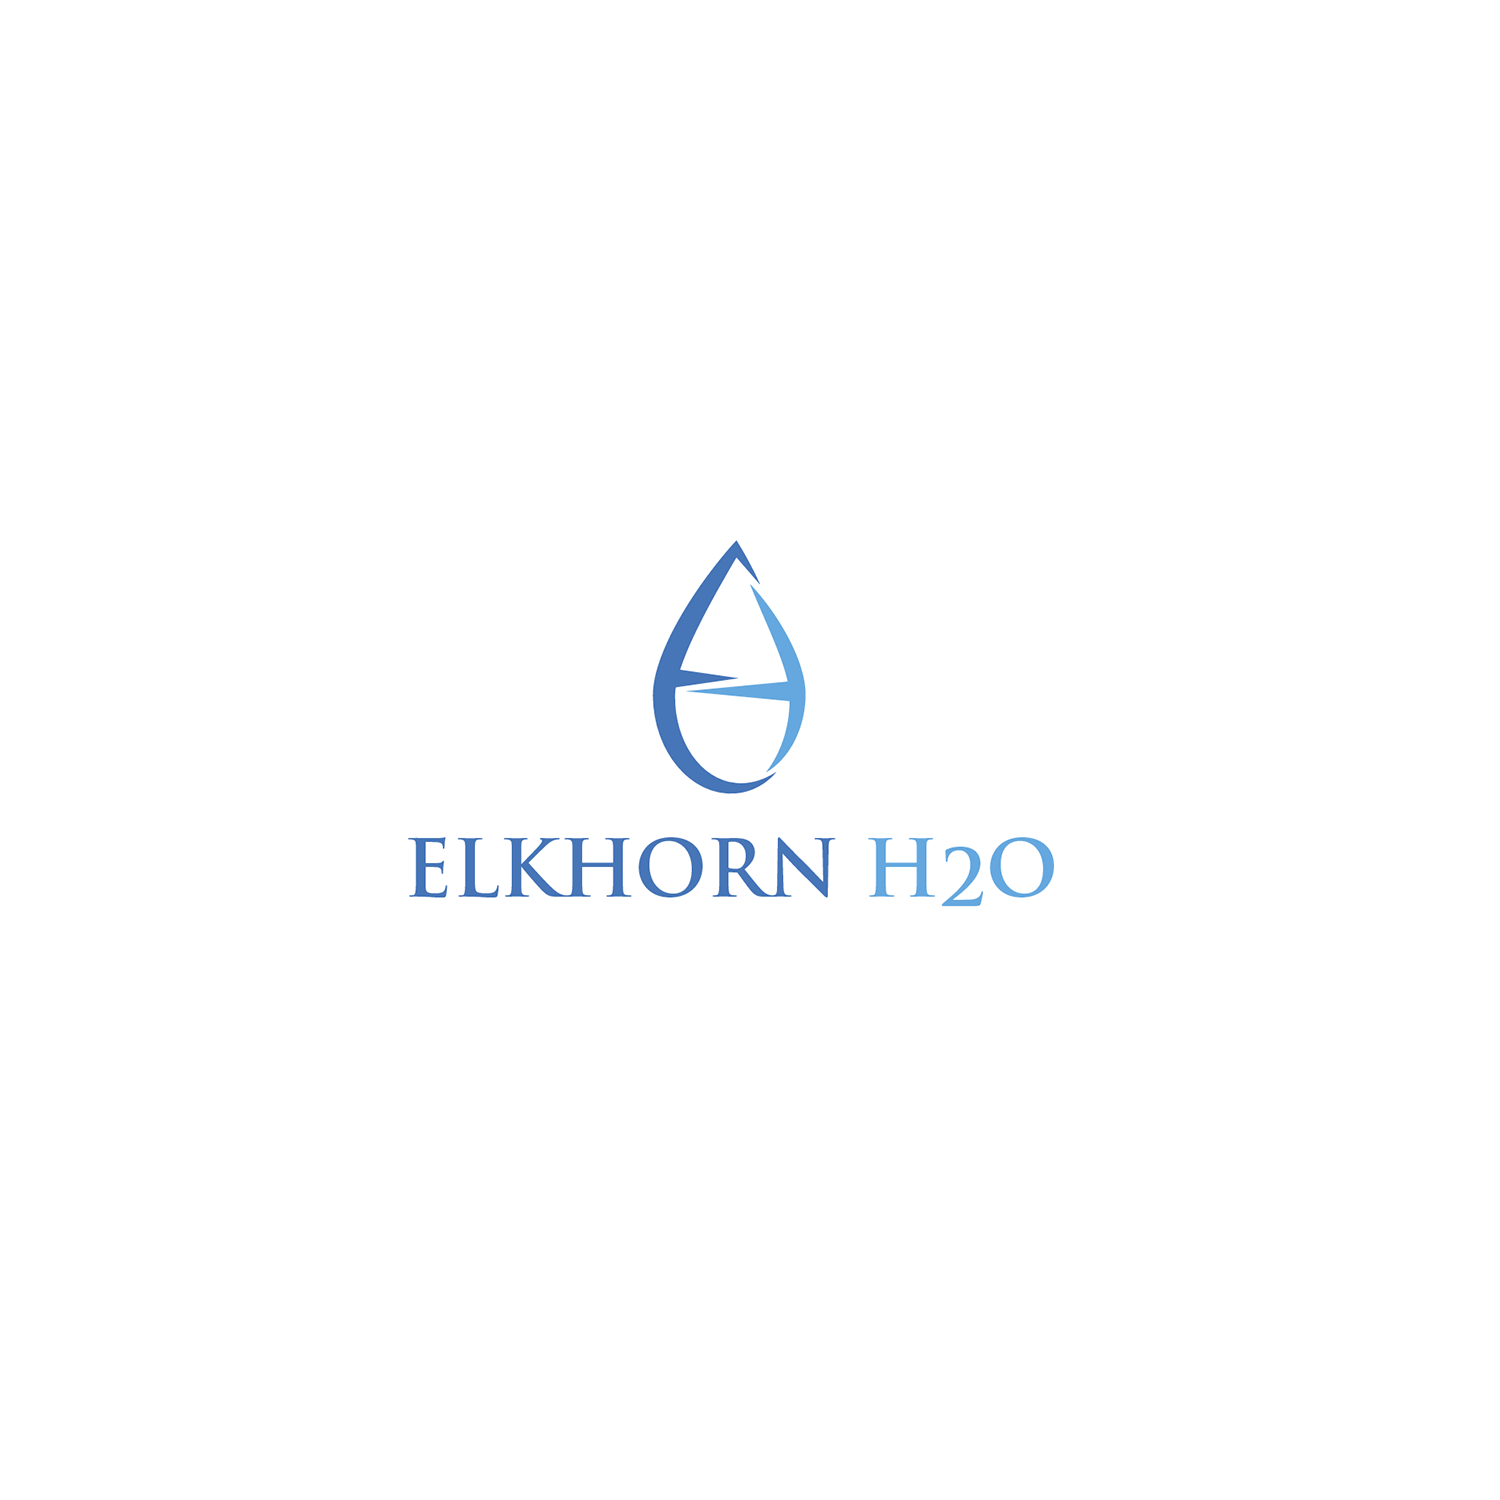 H20 Logo - Colorful, Elegant Logo Design for Elkhorn H2O or Elkhorn H20, LLC by ...